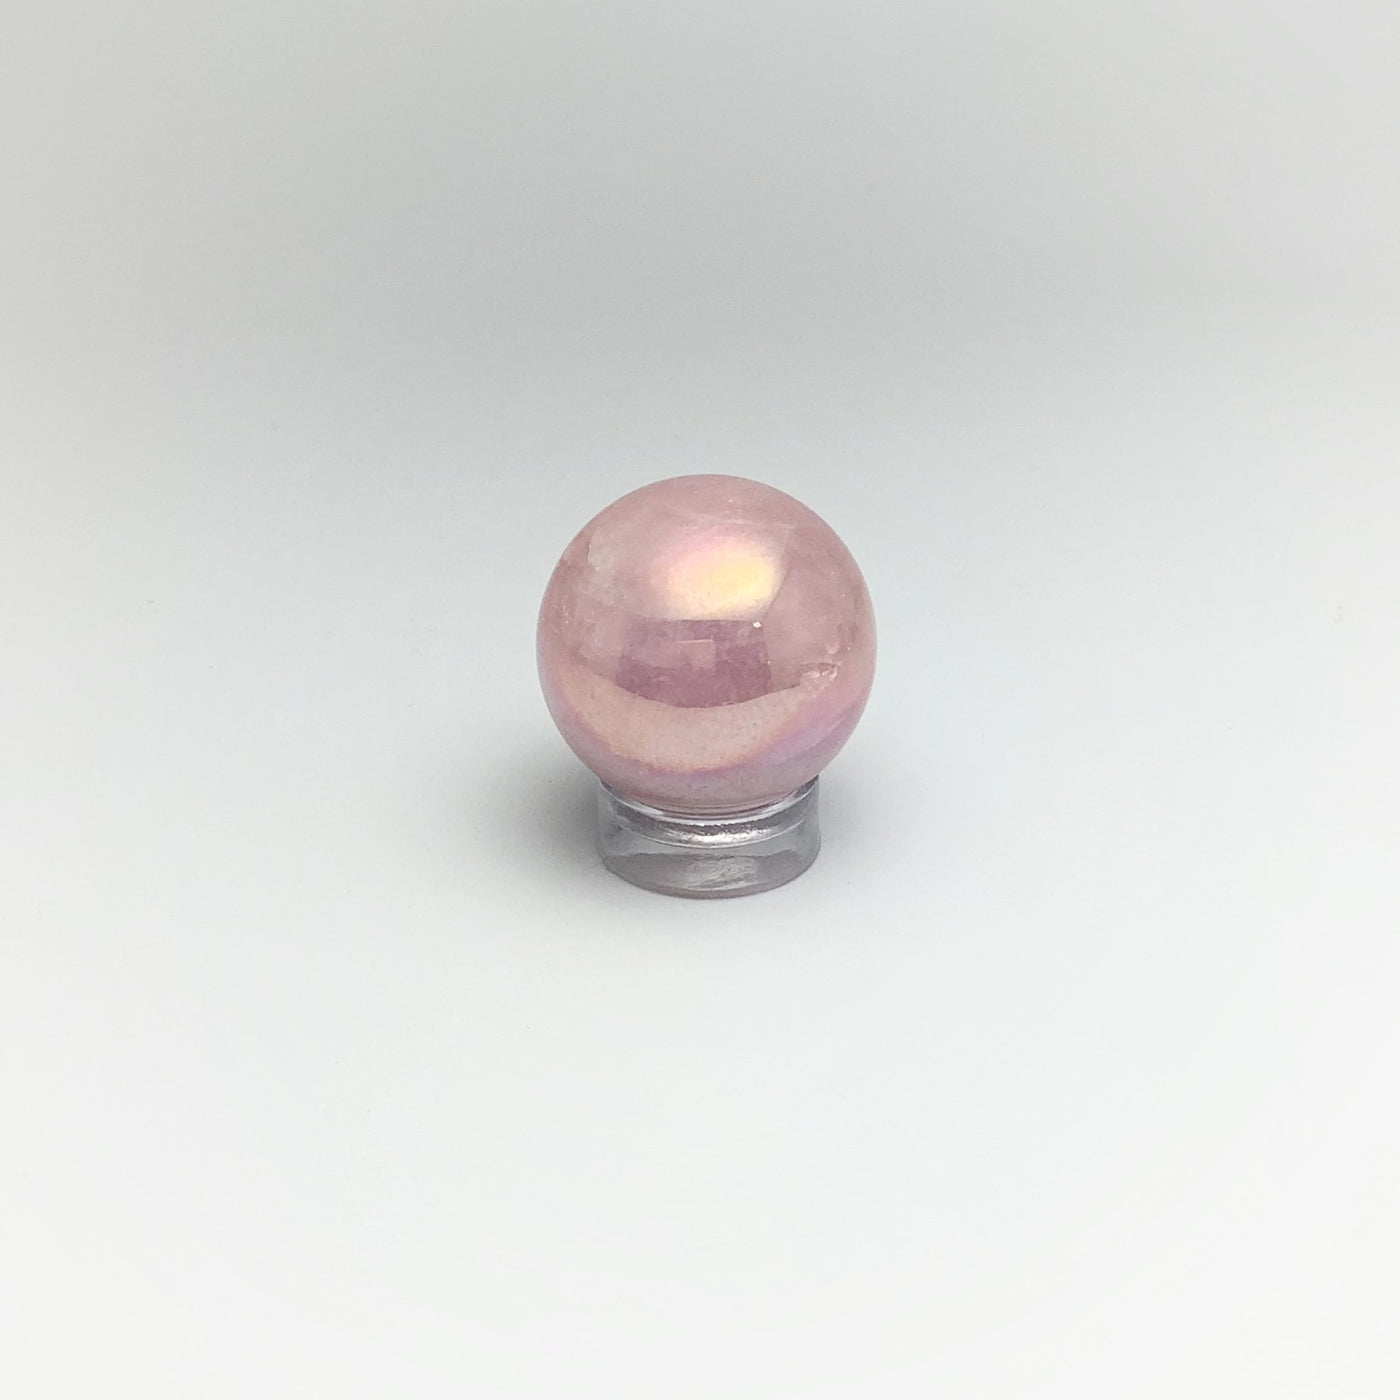 Mini Aura Rose Quartz Sphere at $49 Each